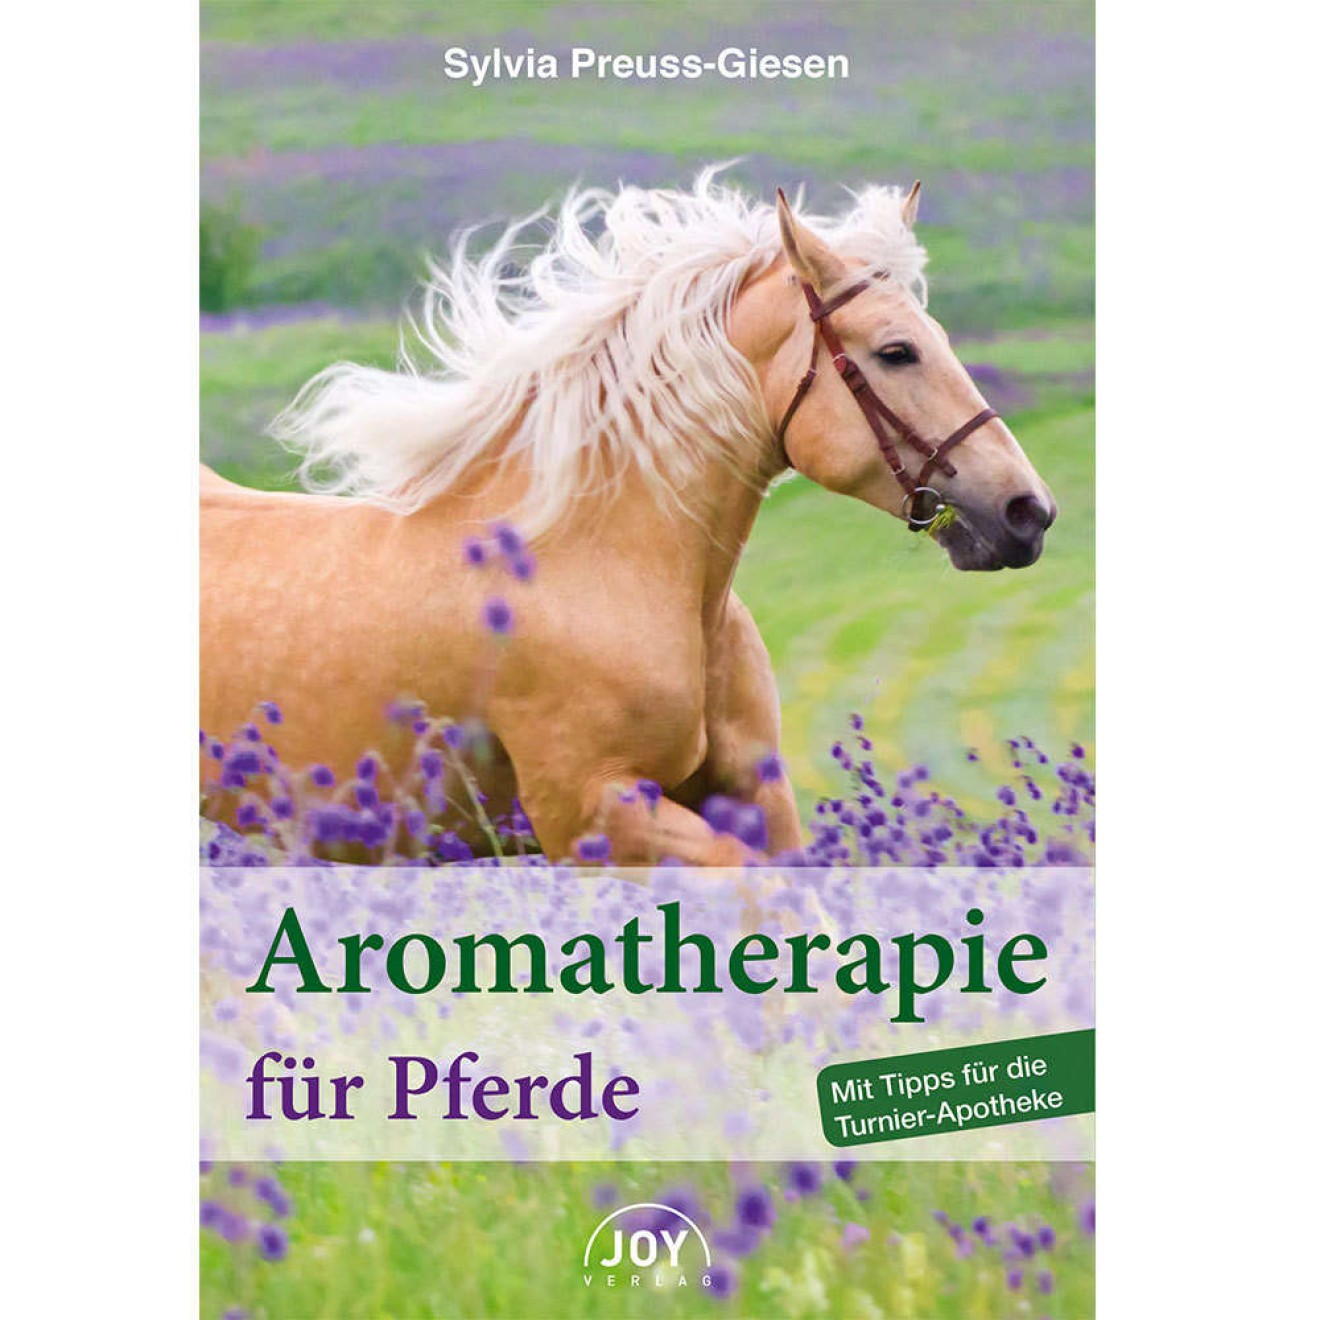 Aromatherapie für Pferde, Preuss-Giesen